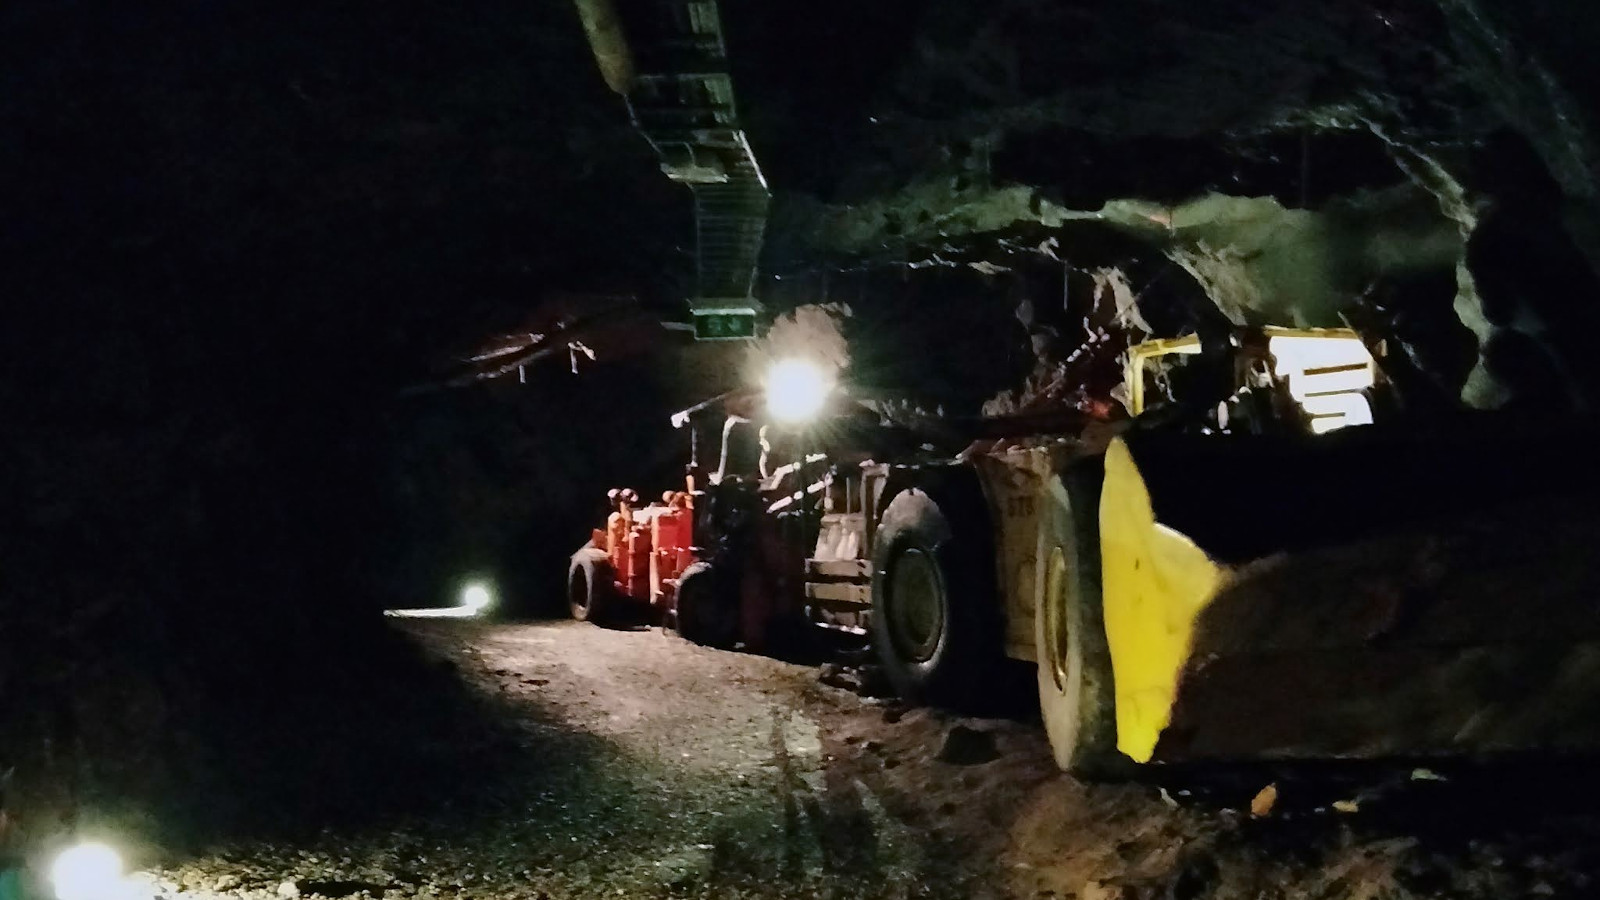 Outokummun kaivosmuseossa pääsee myös kaivostunneliin, jossa kosteudessa tiivistynyttä vettä tipahteli päälle.